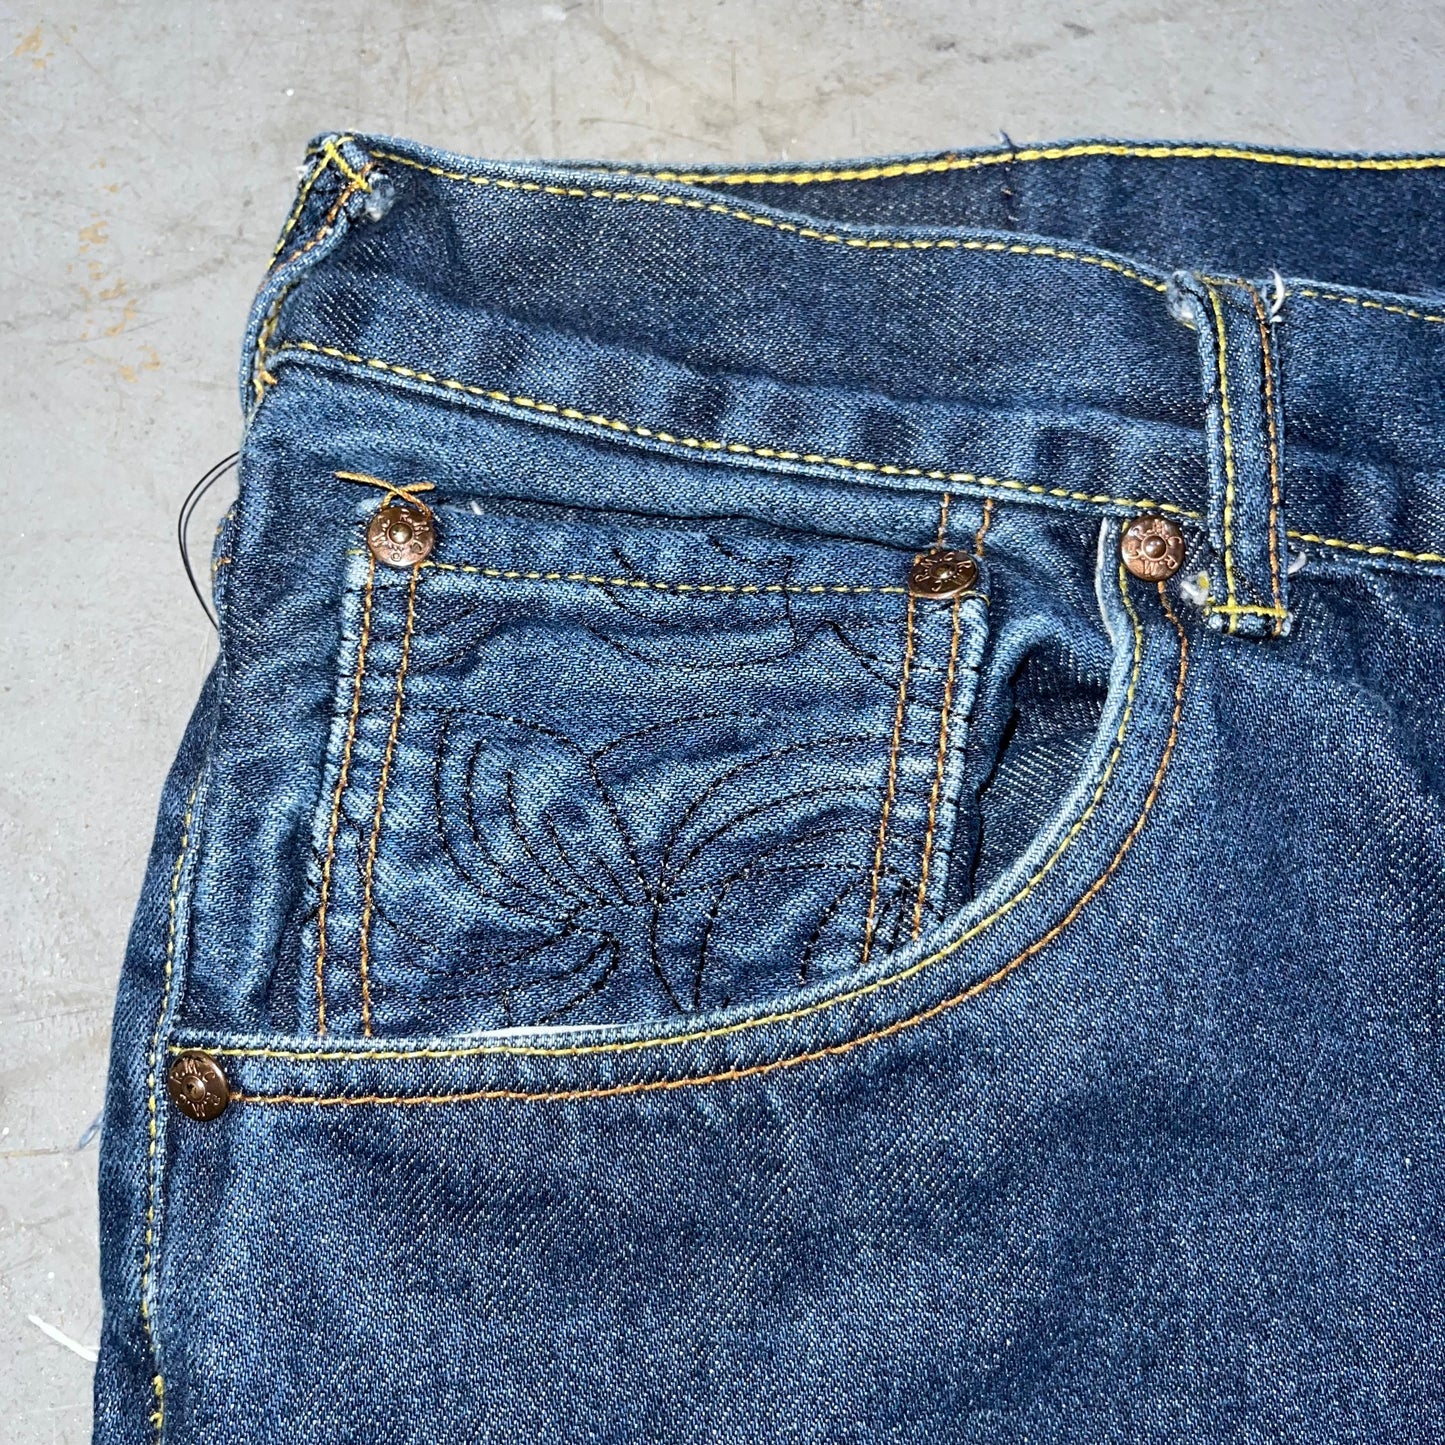 Vintage Y2K Red Monkey “let it bee!” Jeans. Size 38